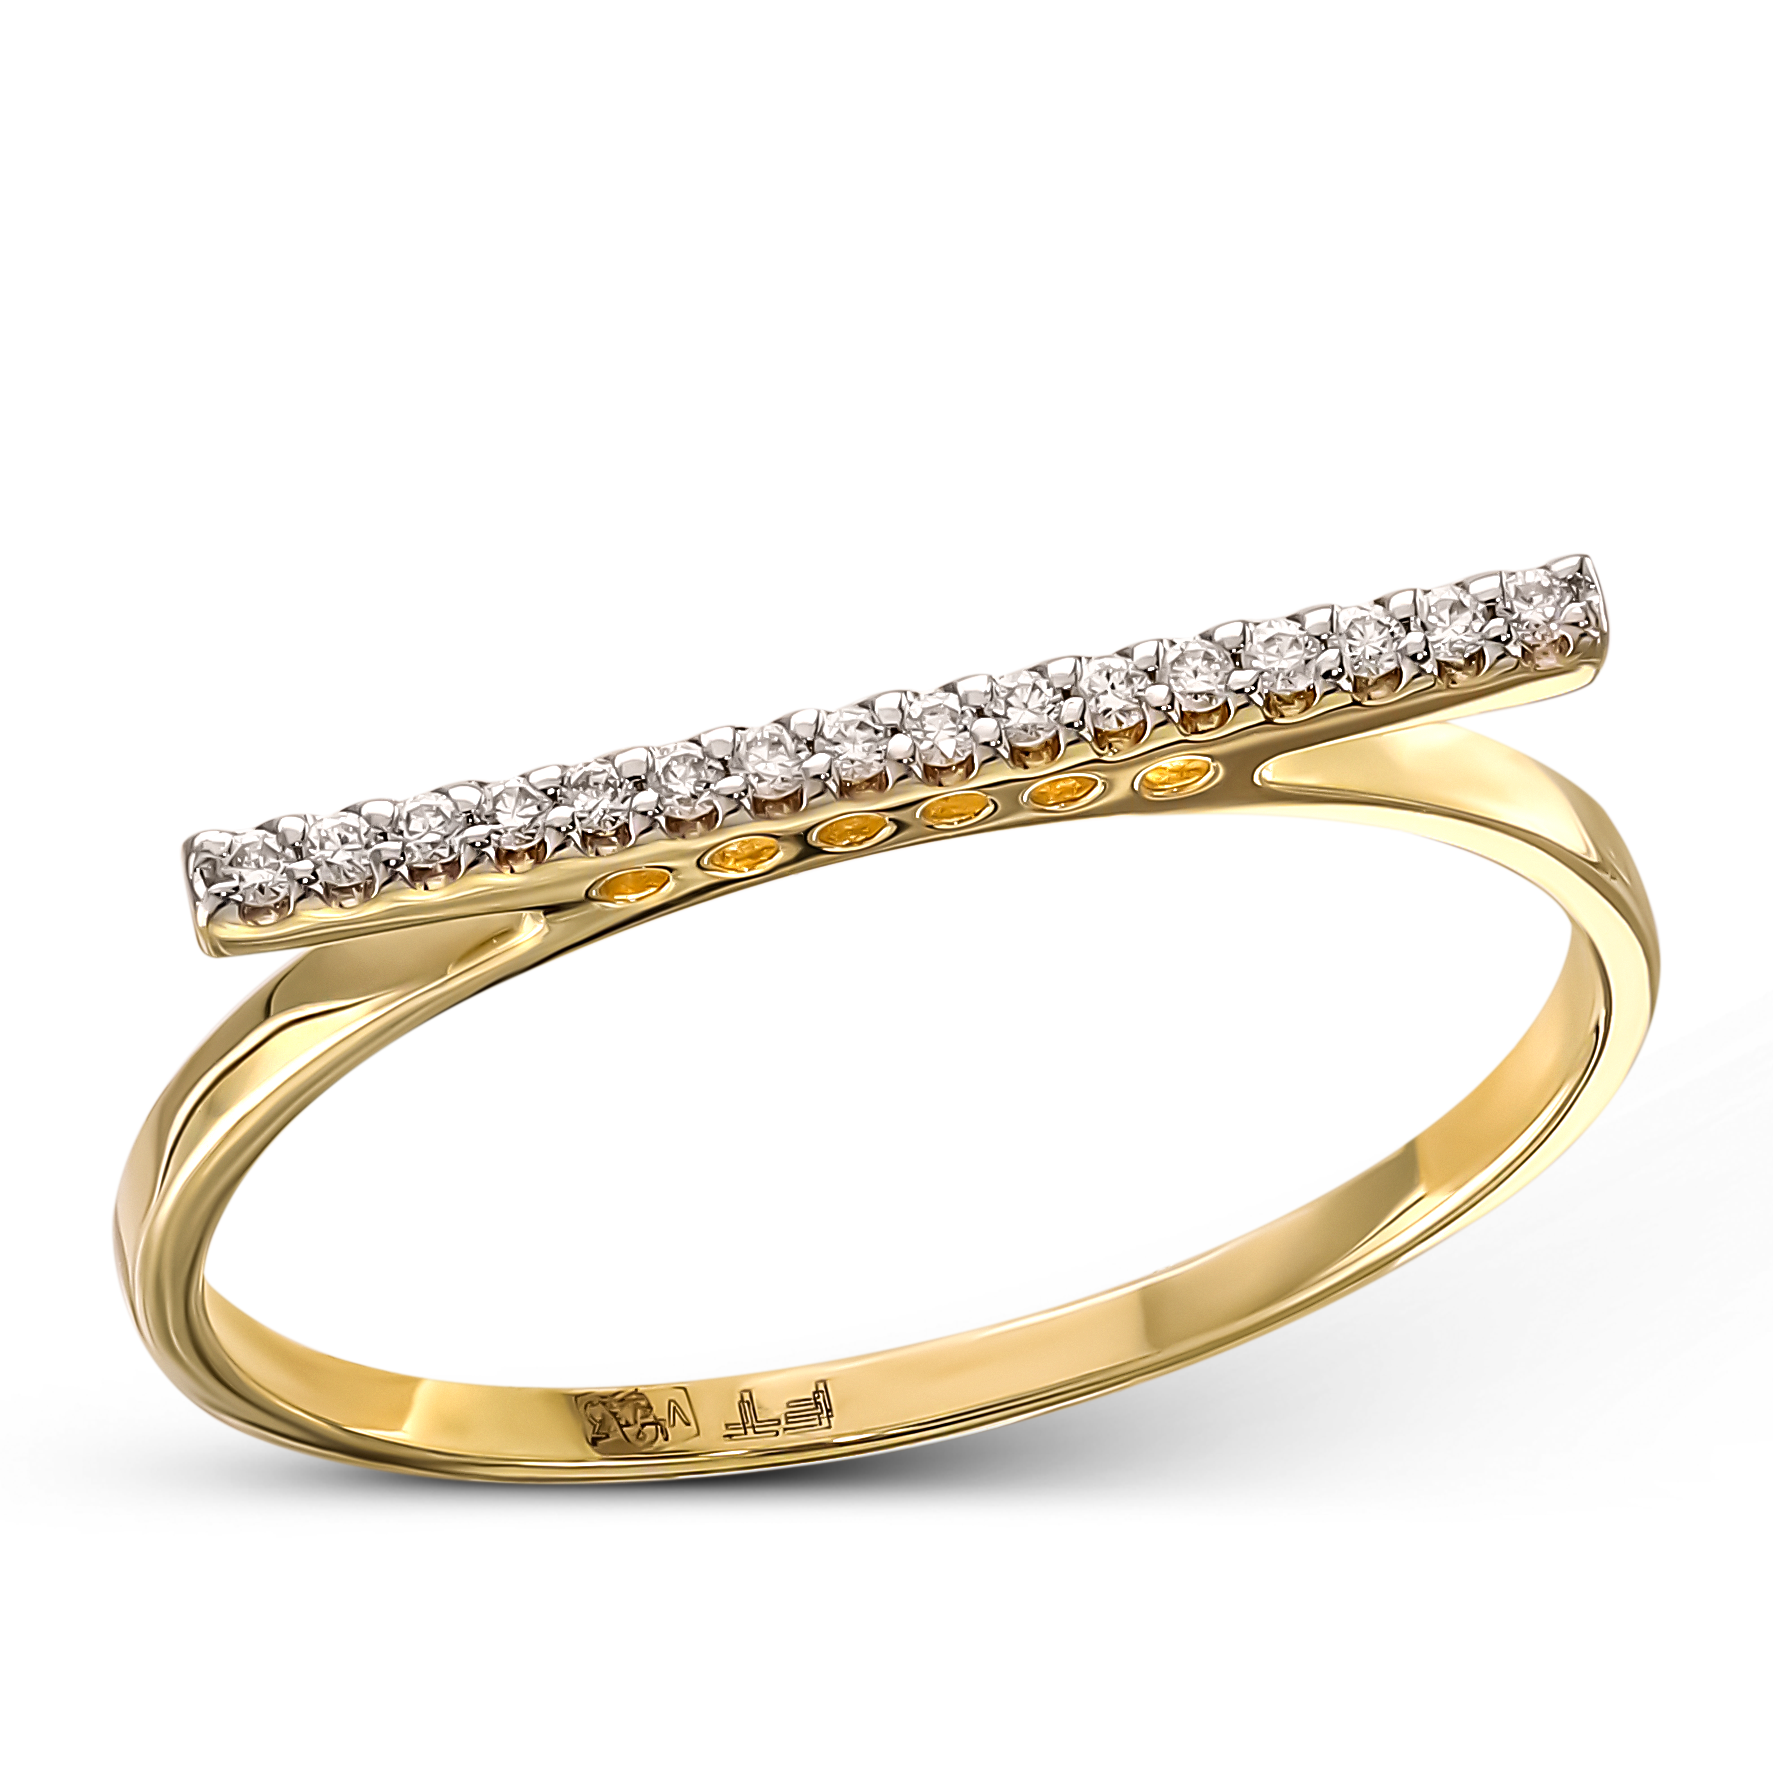 Designerski pierścionek złoty z diamentami naturalnymi, próba 585